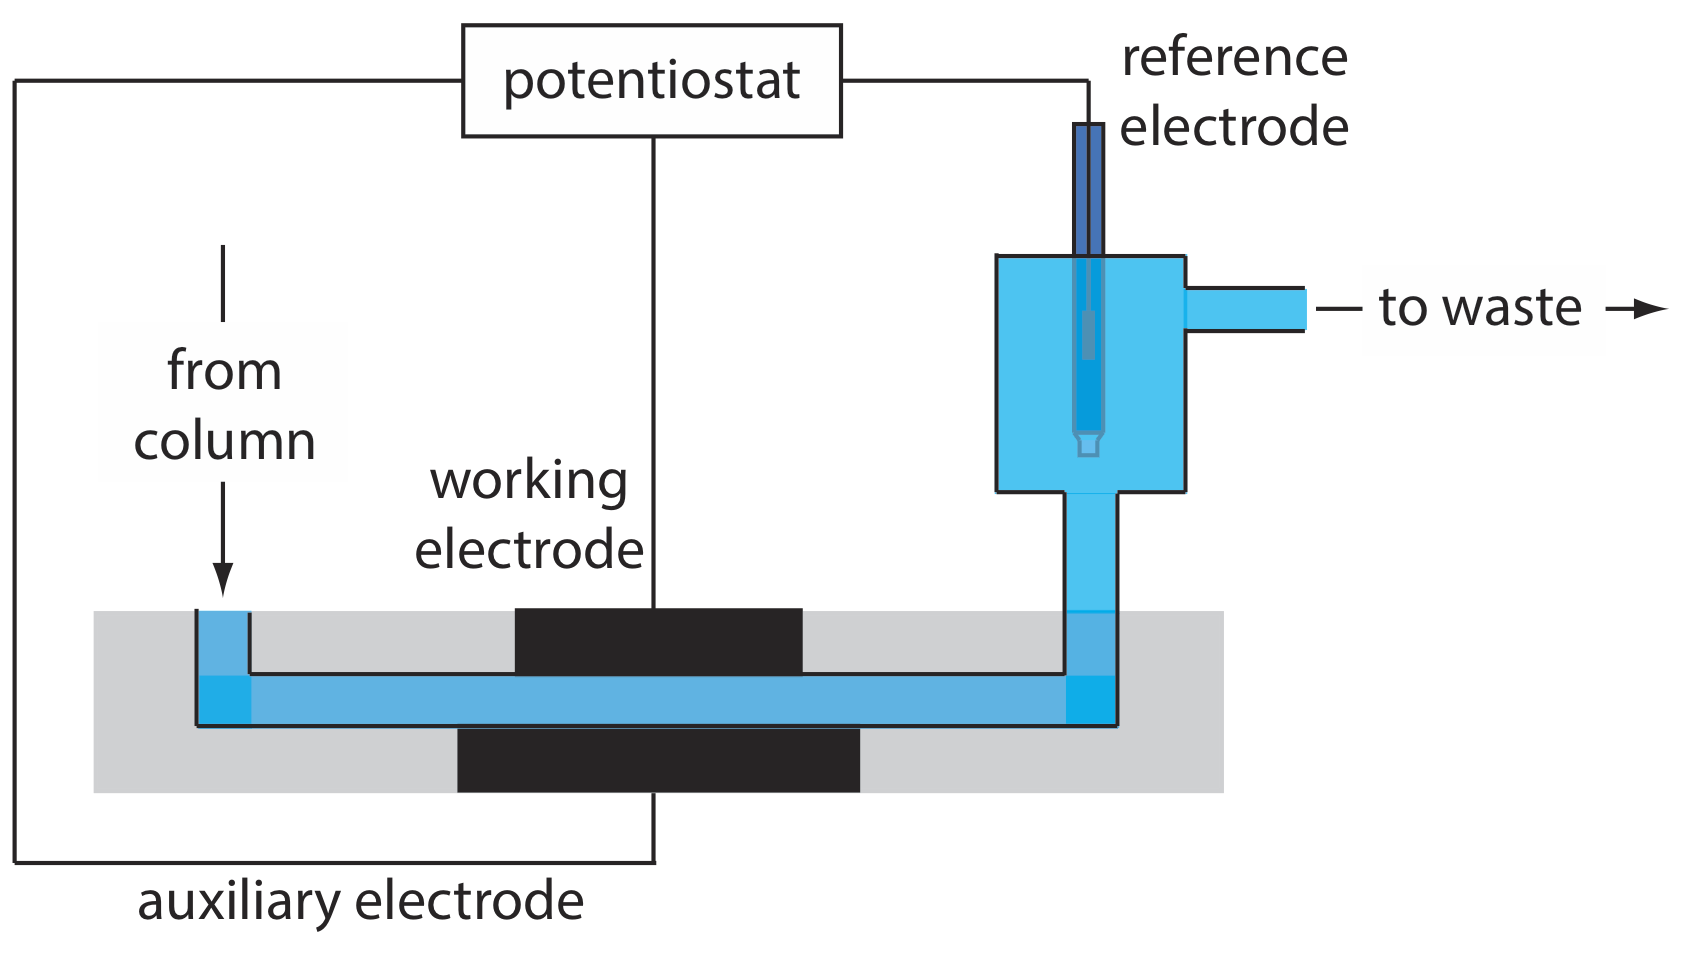 La celda de flujo comienza con el flujo desde la columna y los electrodos auxiliares y de trabajo más allá de un electrodo de referencia que todos alimentan a un potenciostato. Después de la referencia, el flujo procede al desperdicio.